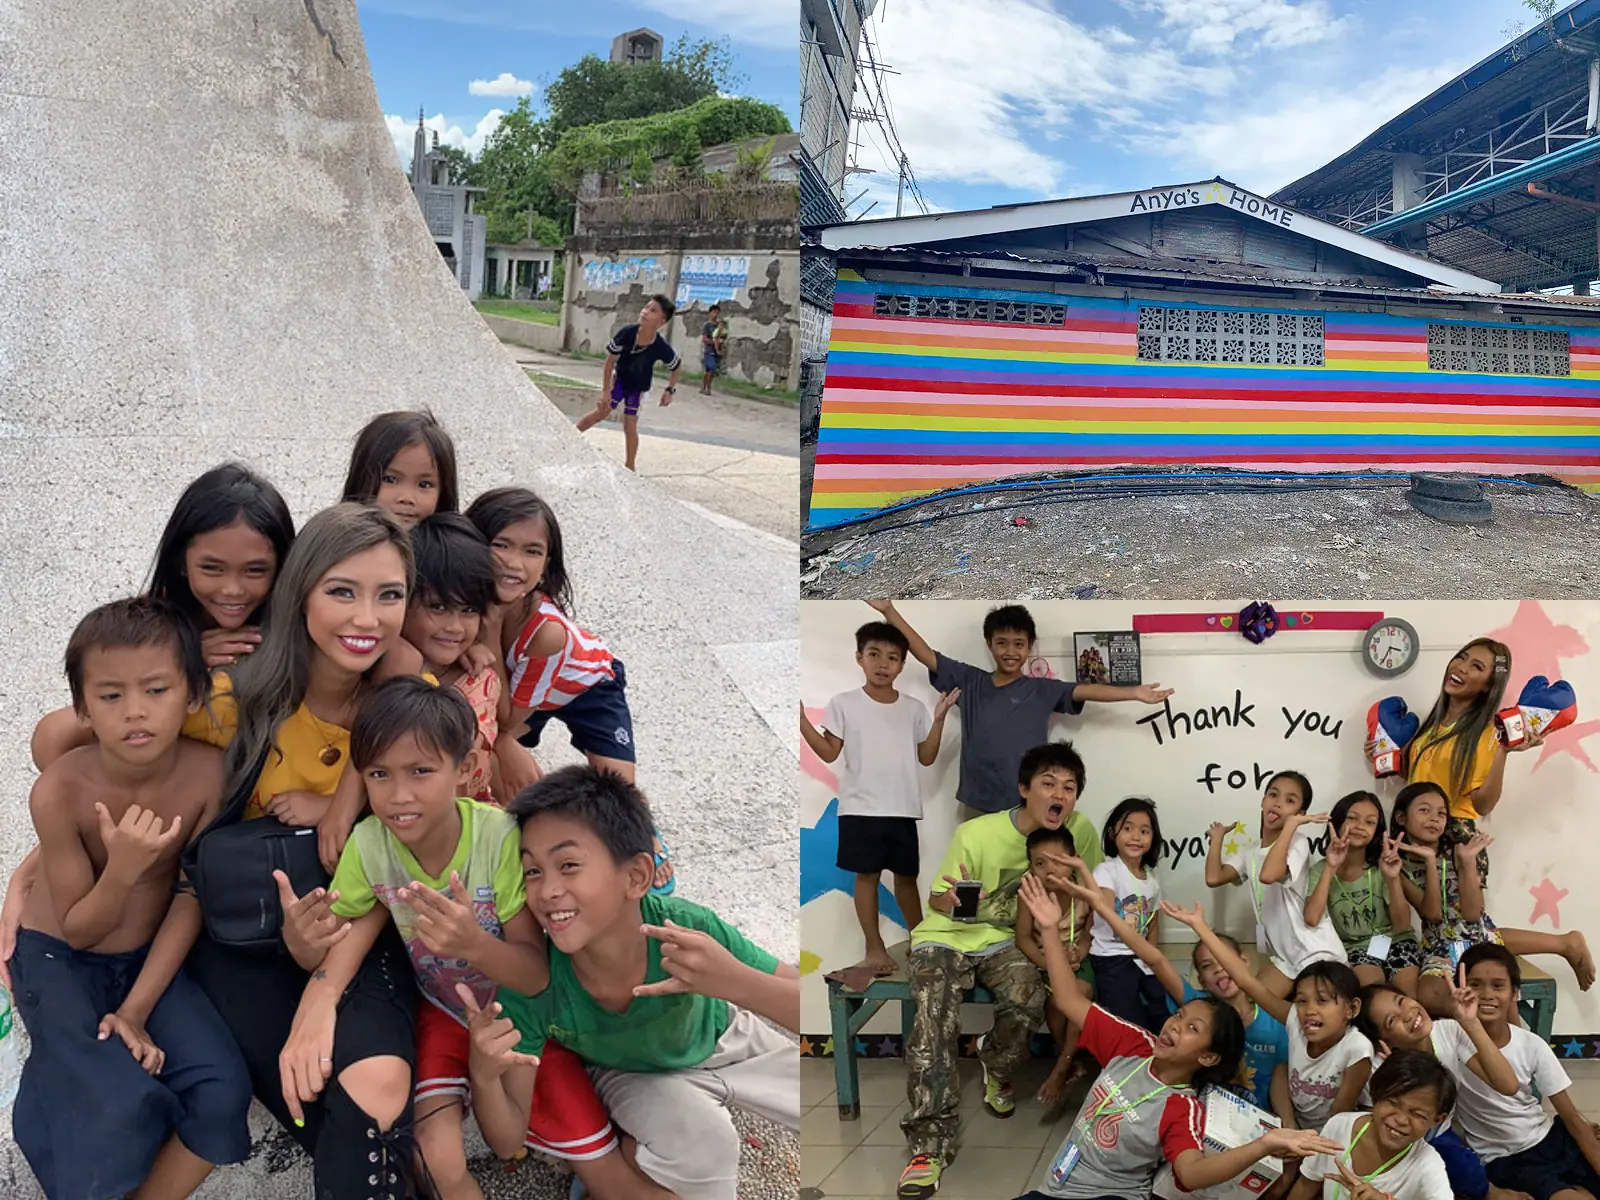 小学5年生からの夢を実現！愛知県出身のAnyaさん、フィリピンのセブ島に寺子屋「Anya’s HOME」を開校。